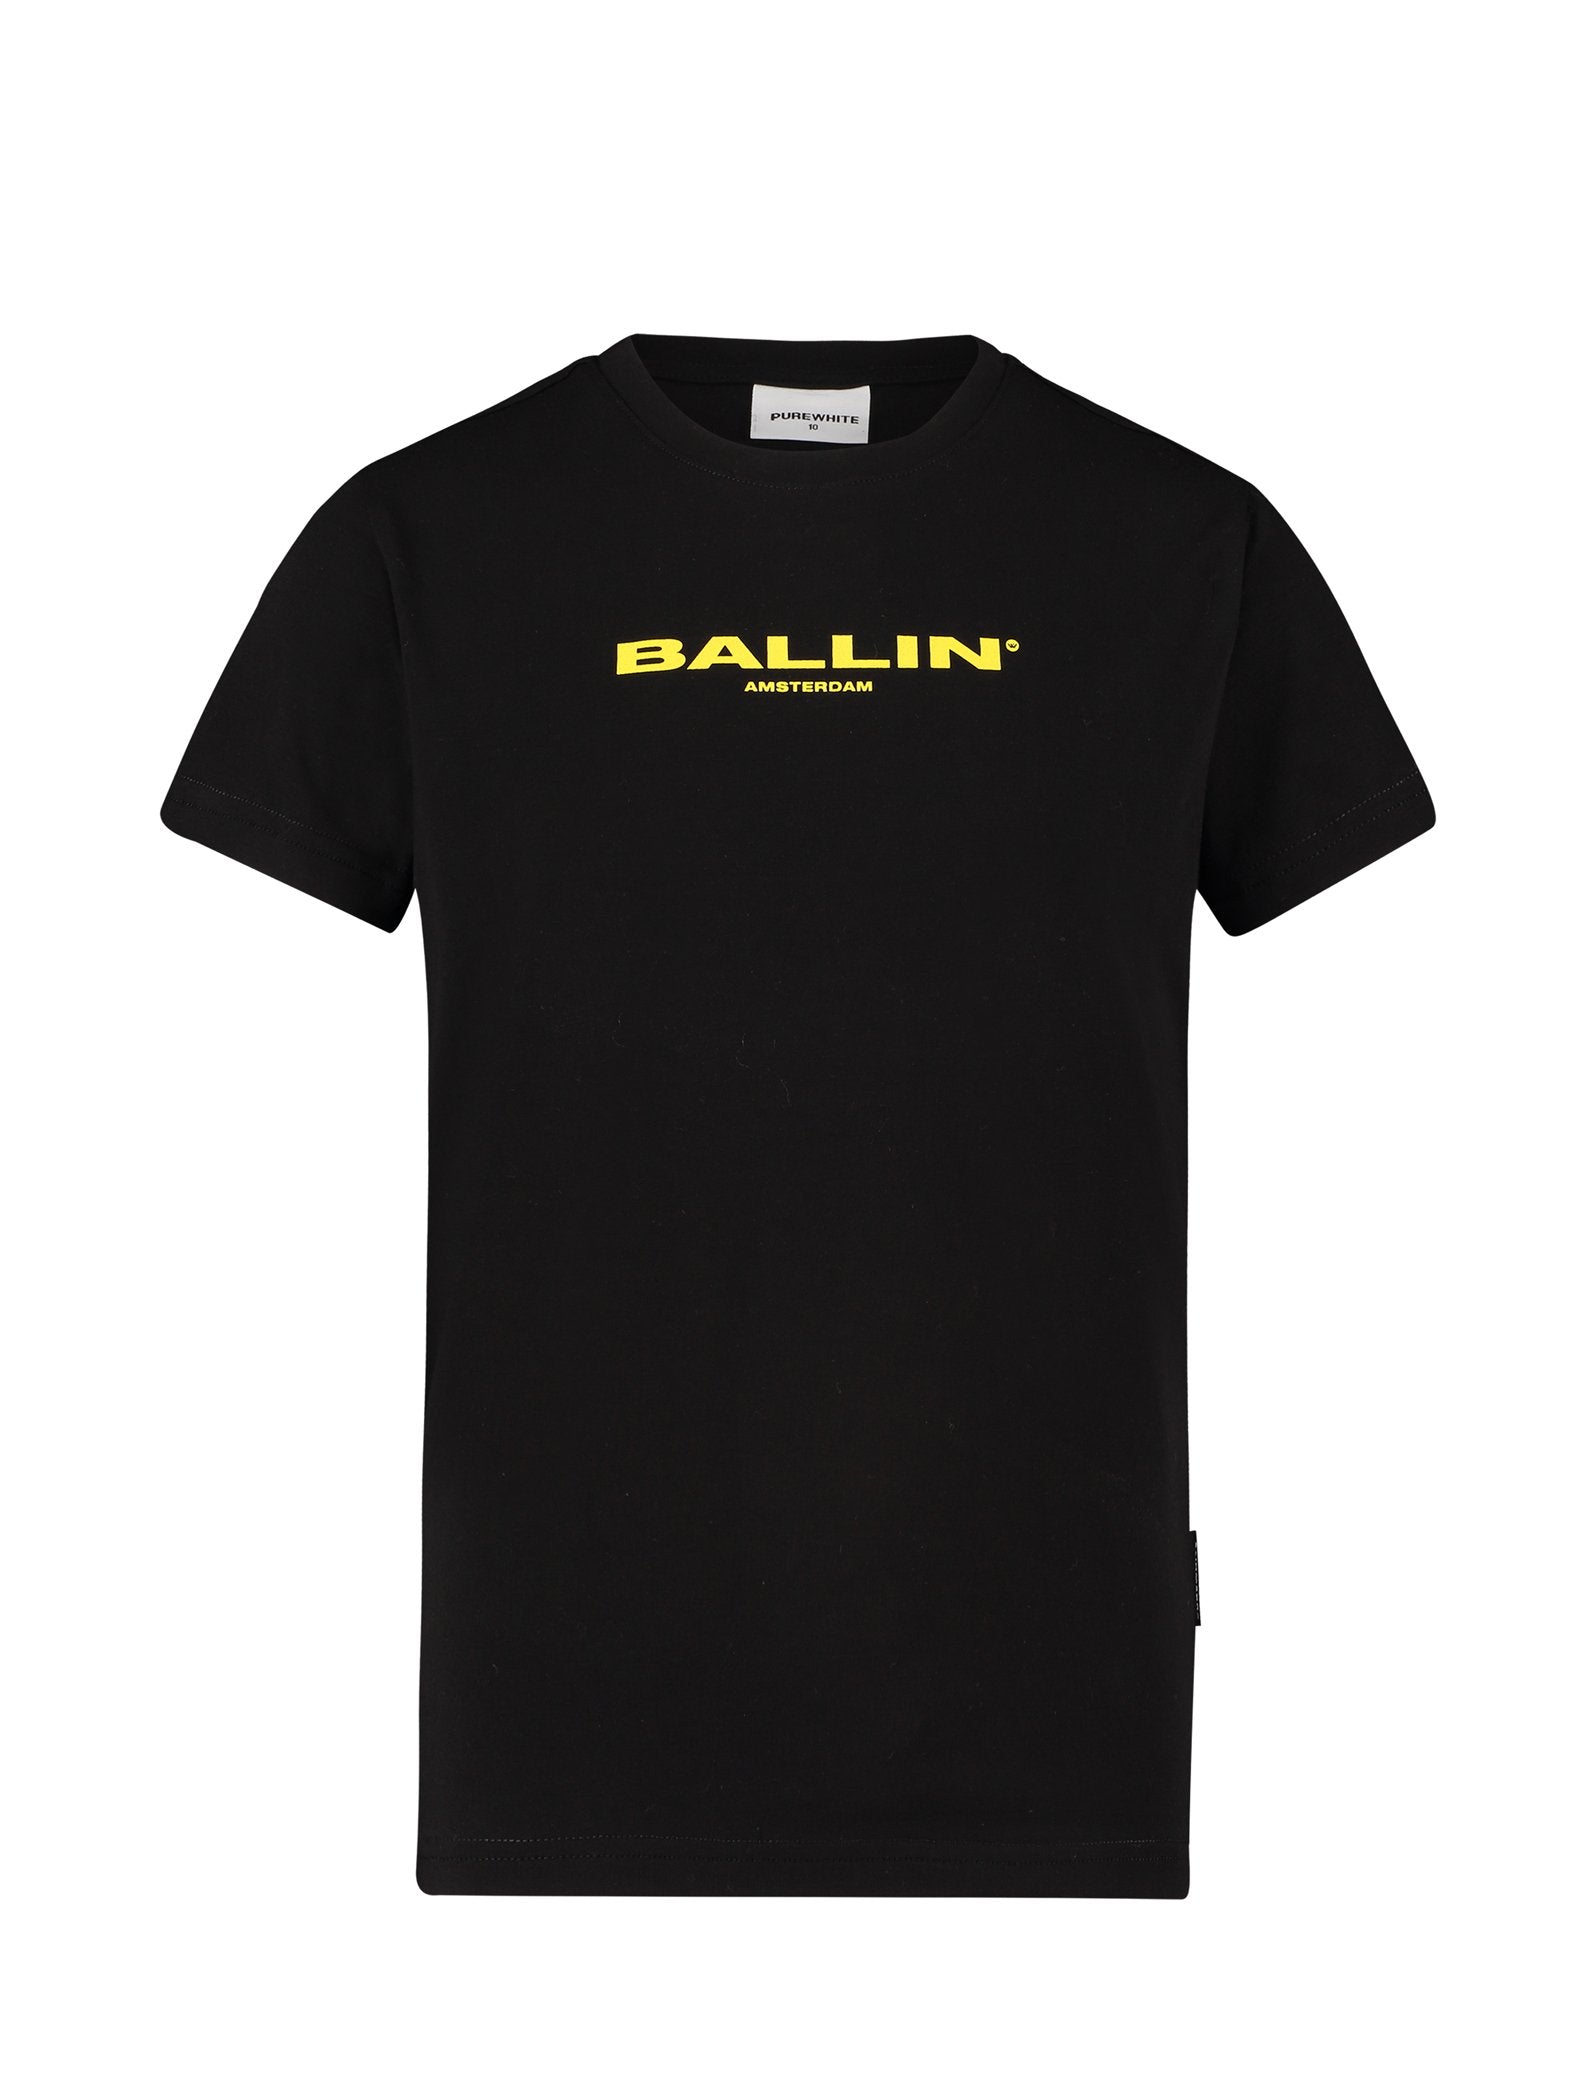 Jongens T-shirt Black van Ballin Amsterdam in de kleur Black in maat 176.